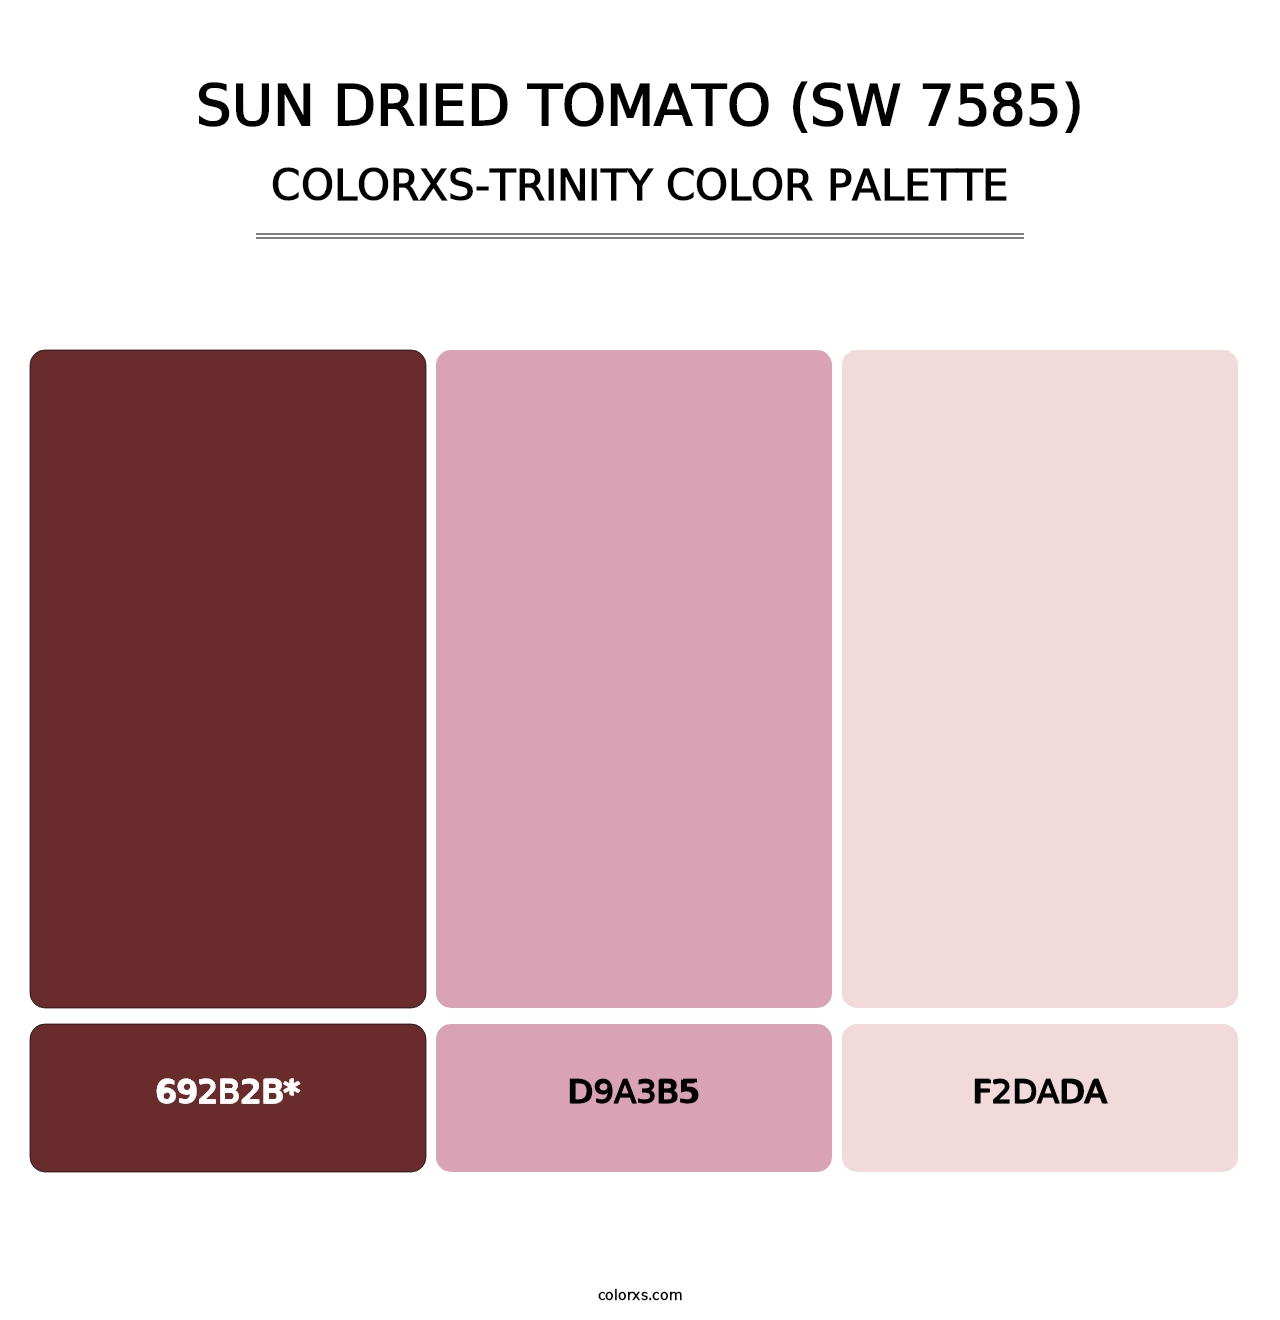 Sun Dried Tomato (SW 7585) - Colorxs Trinity Palette